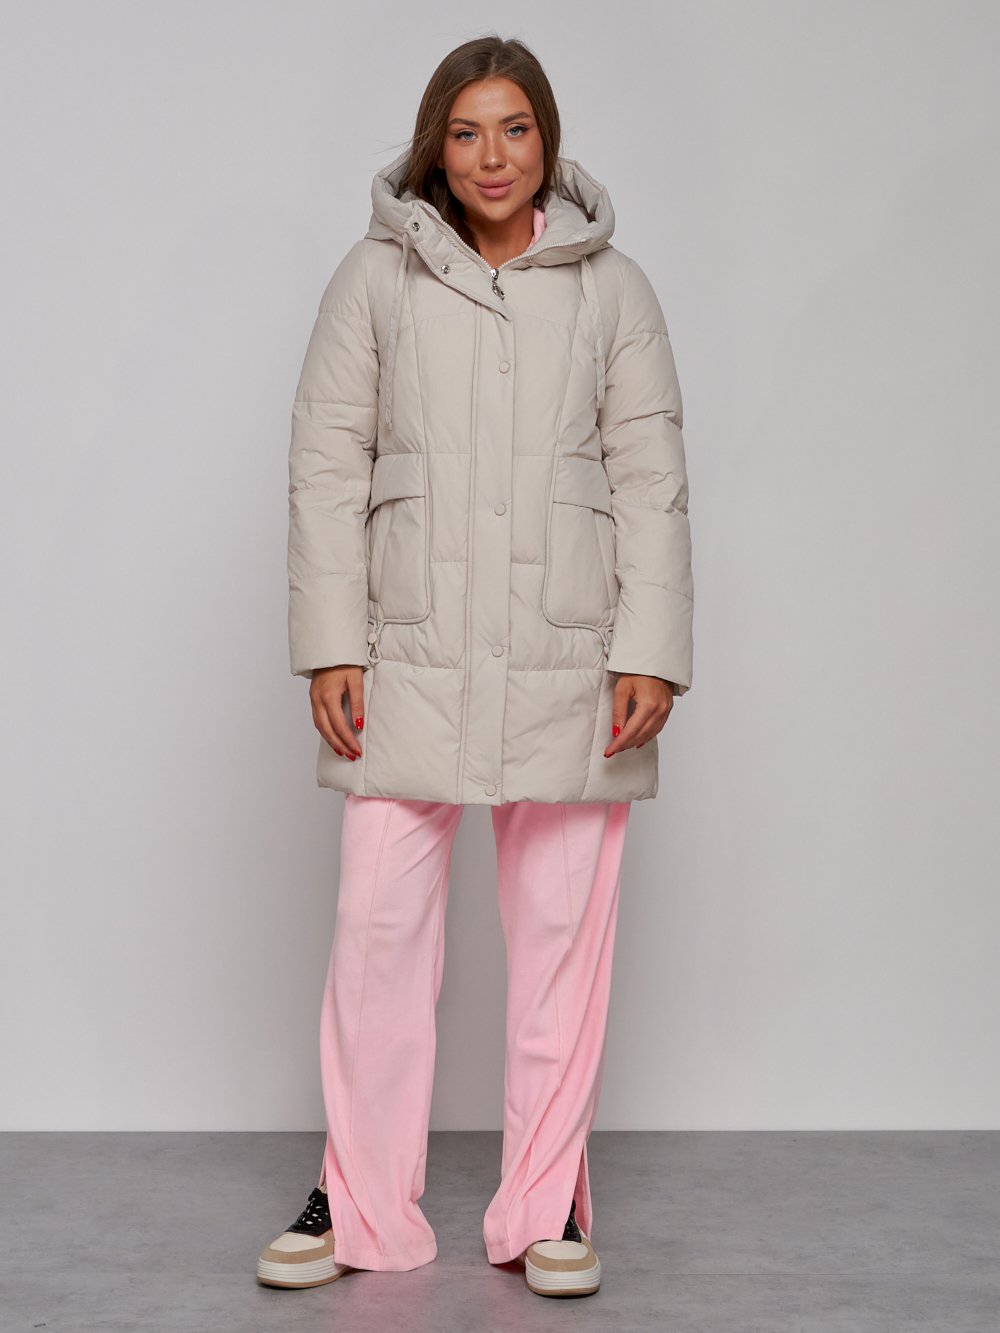 Купить оптом Зимняя женская куртка молодежная с капюшоном бежевого цвета 586821B в Екатеринбурге